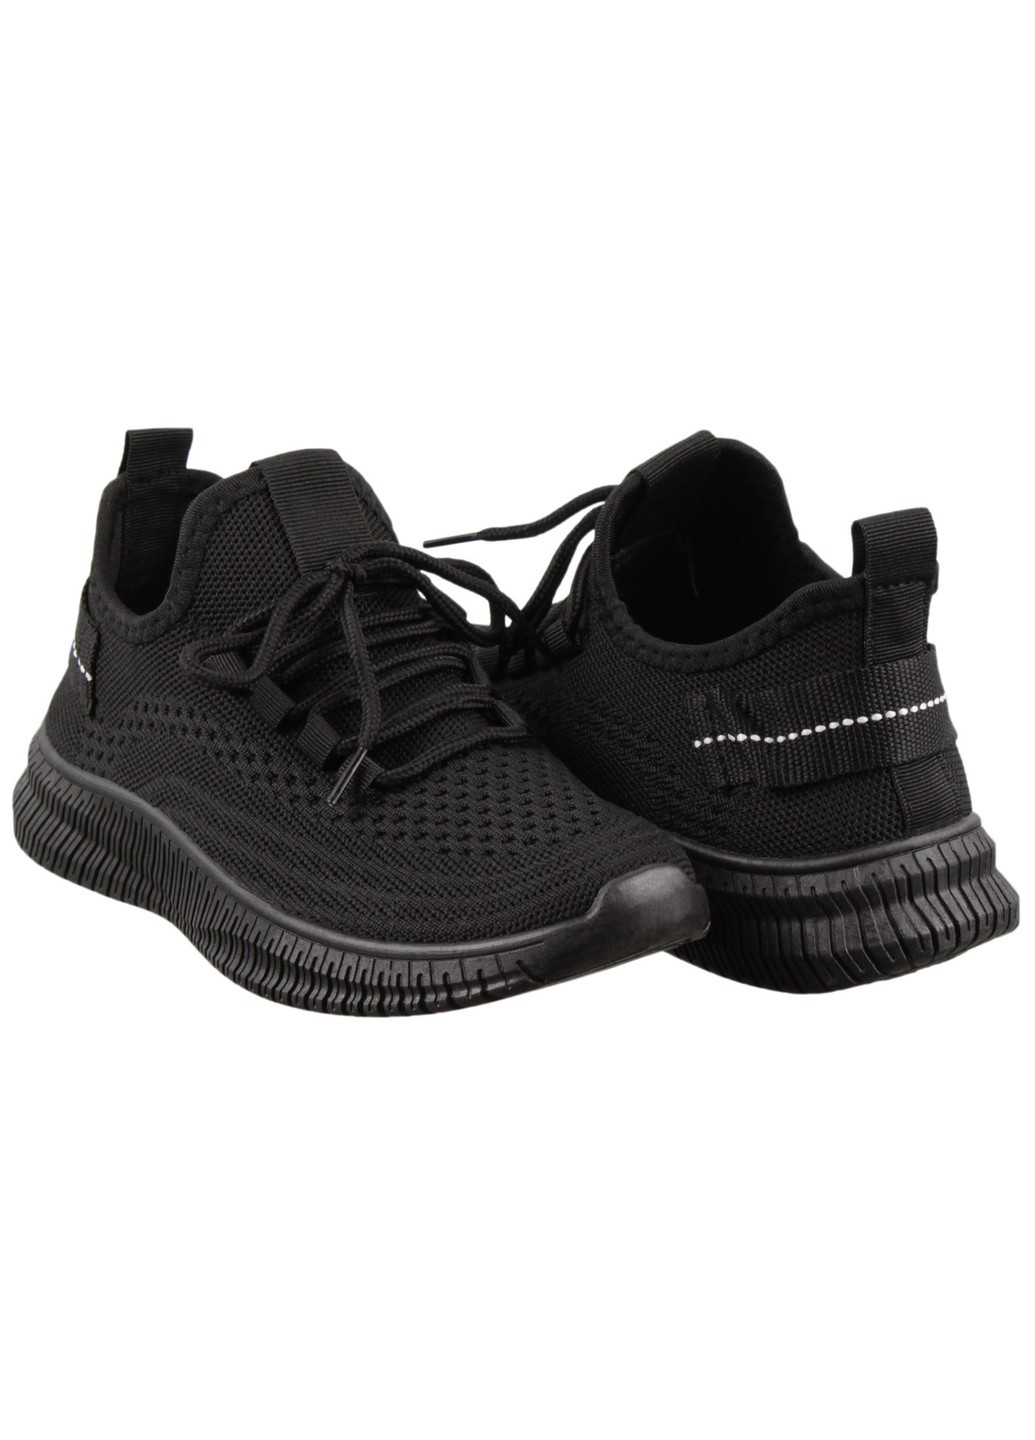 Черные демисезонные женские кроссовки 199065 Baderus